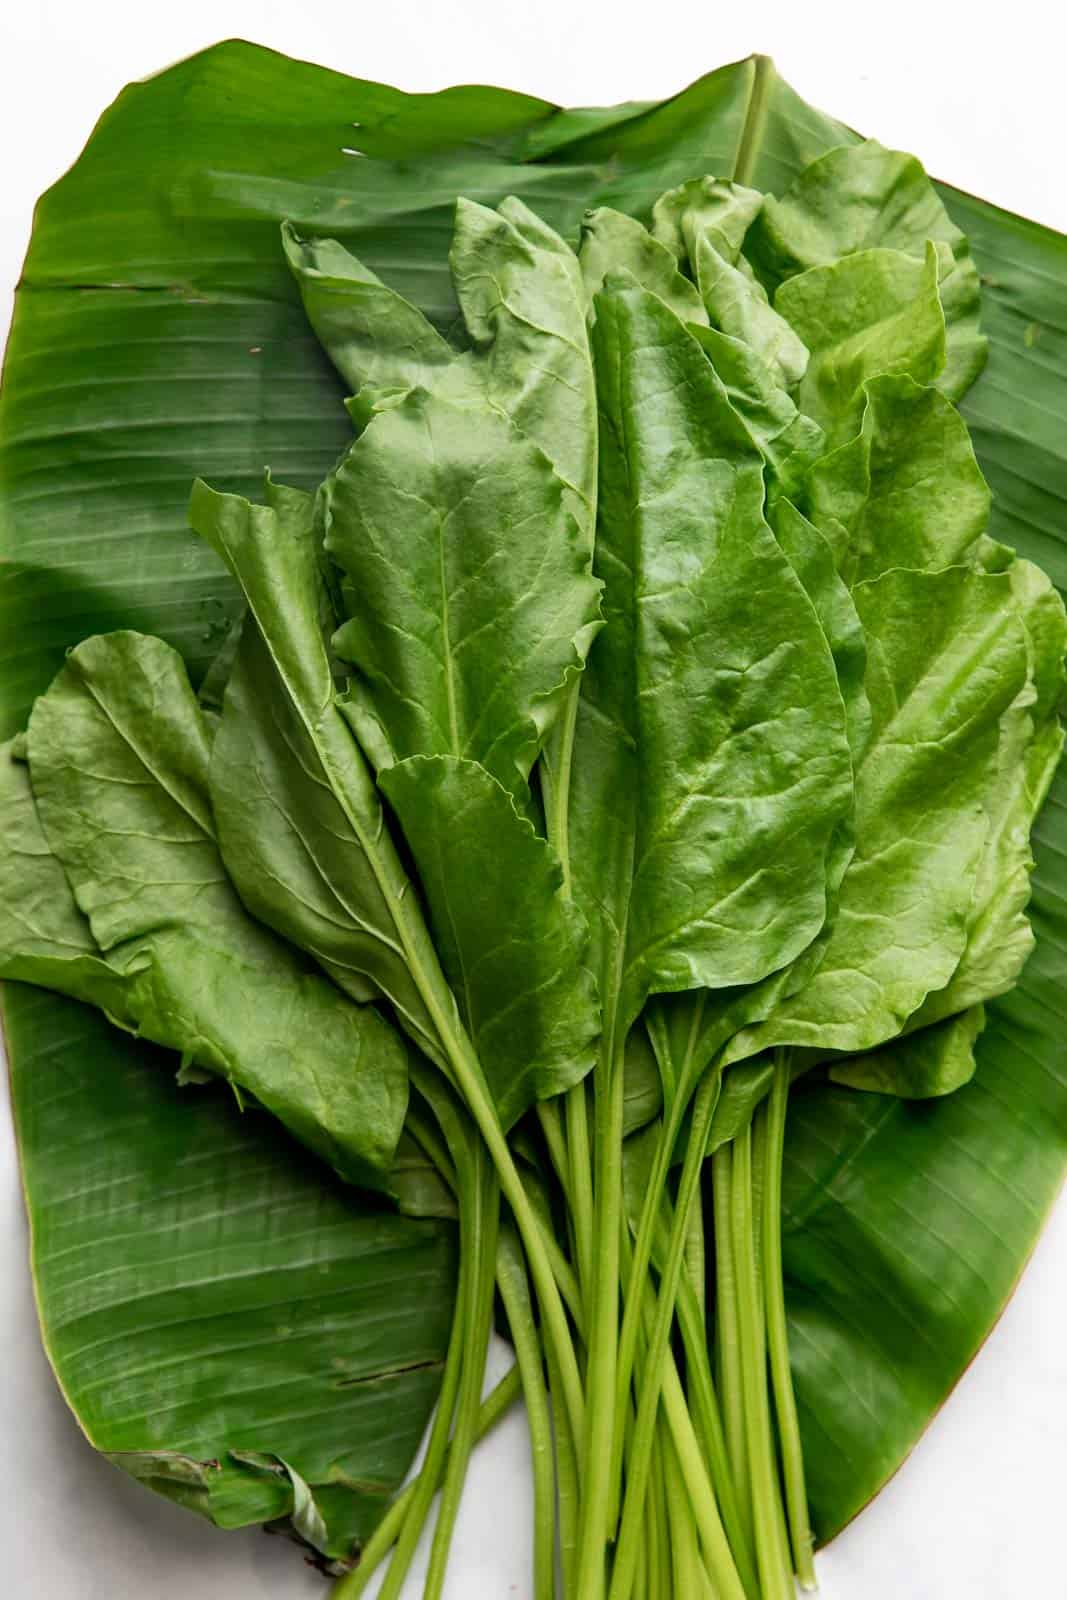 Raw spinach on a banana leaf